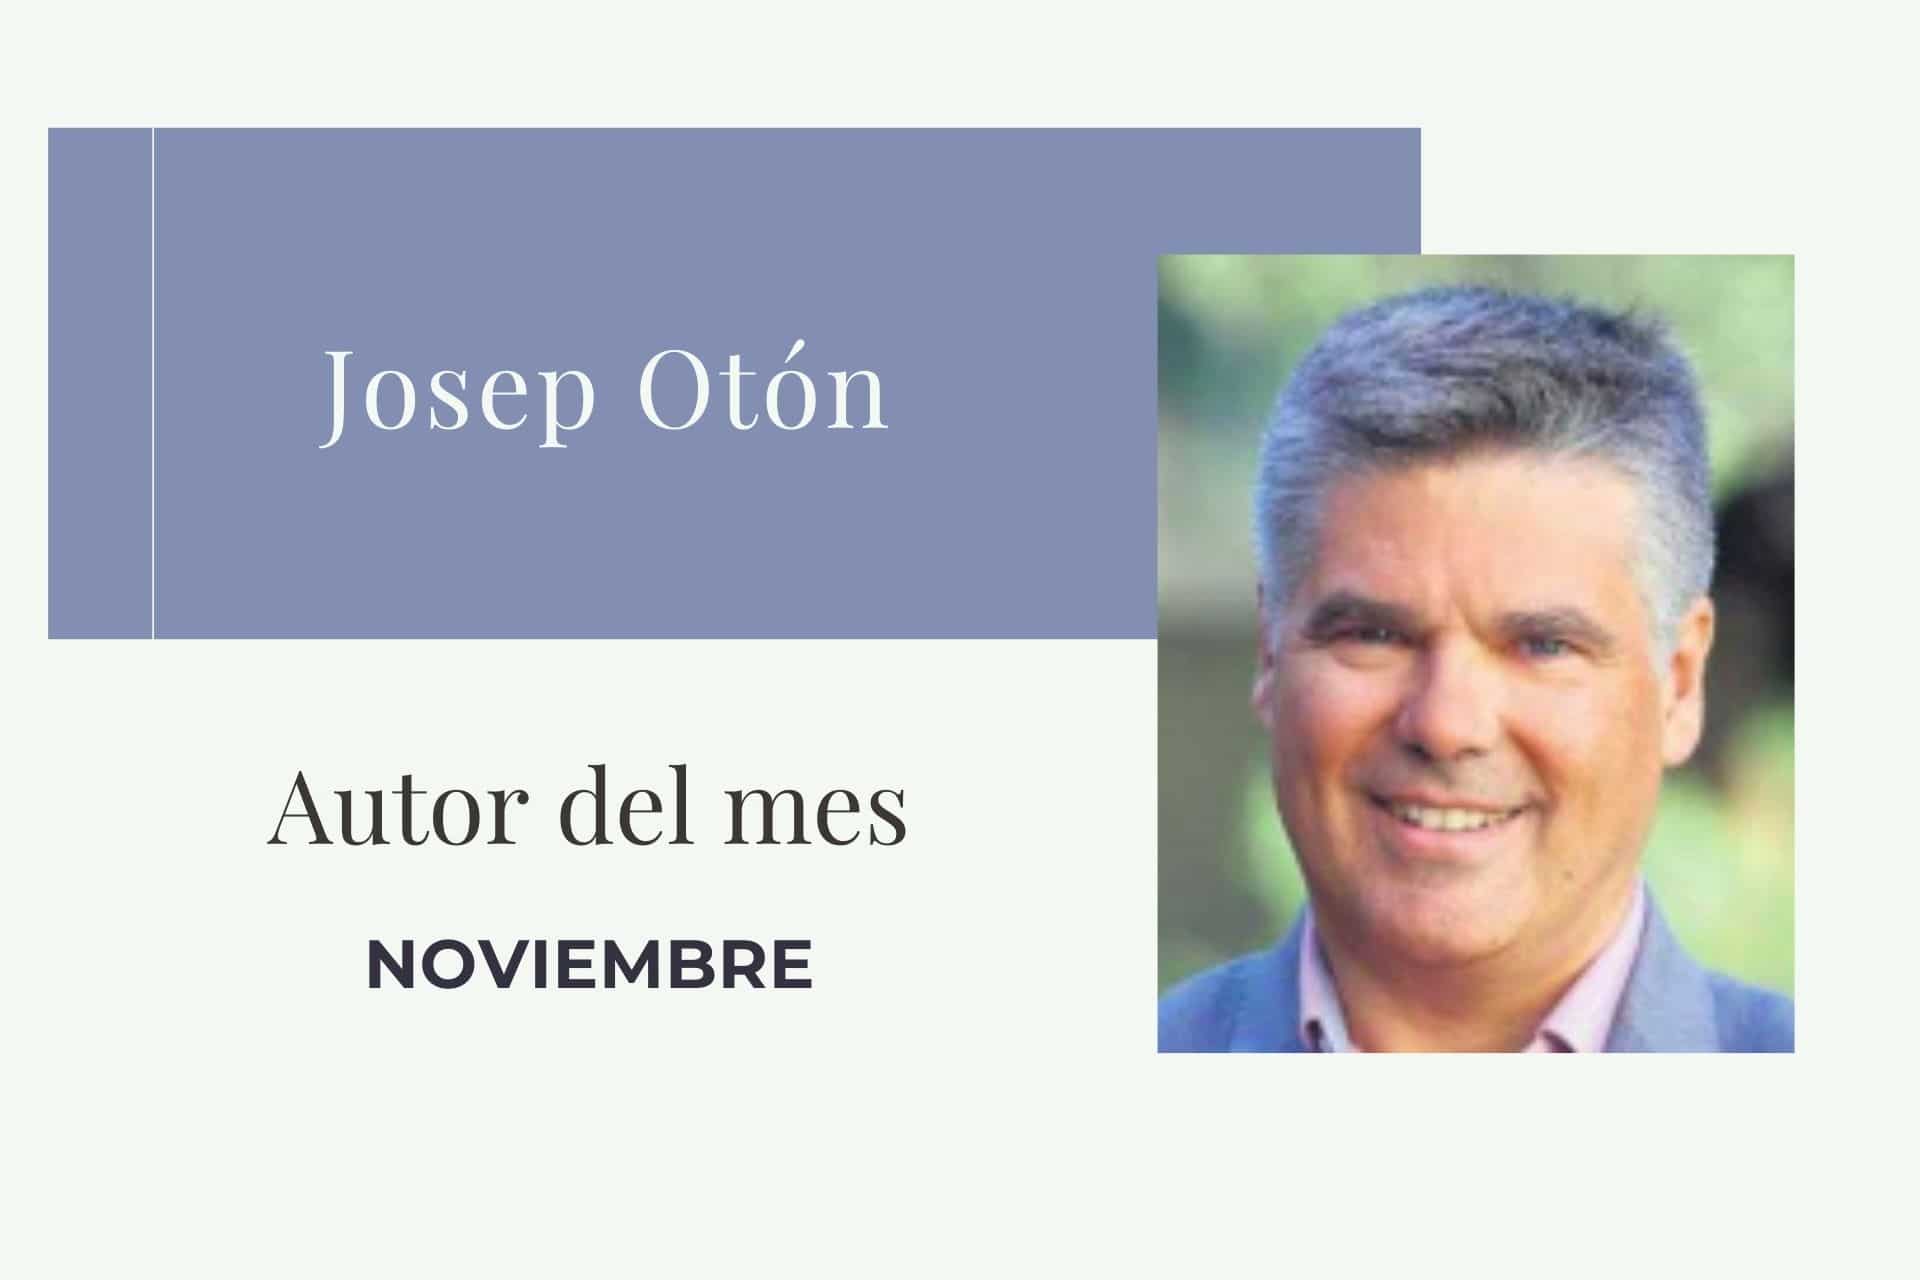 Josep Otón